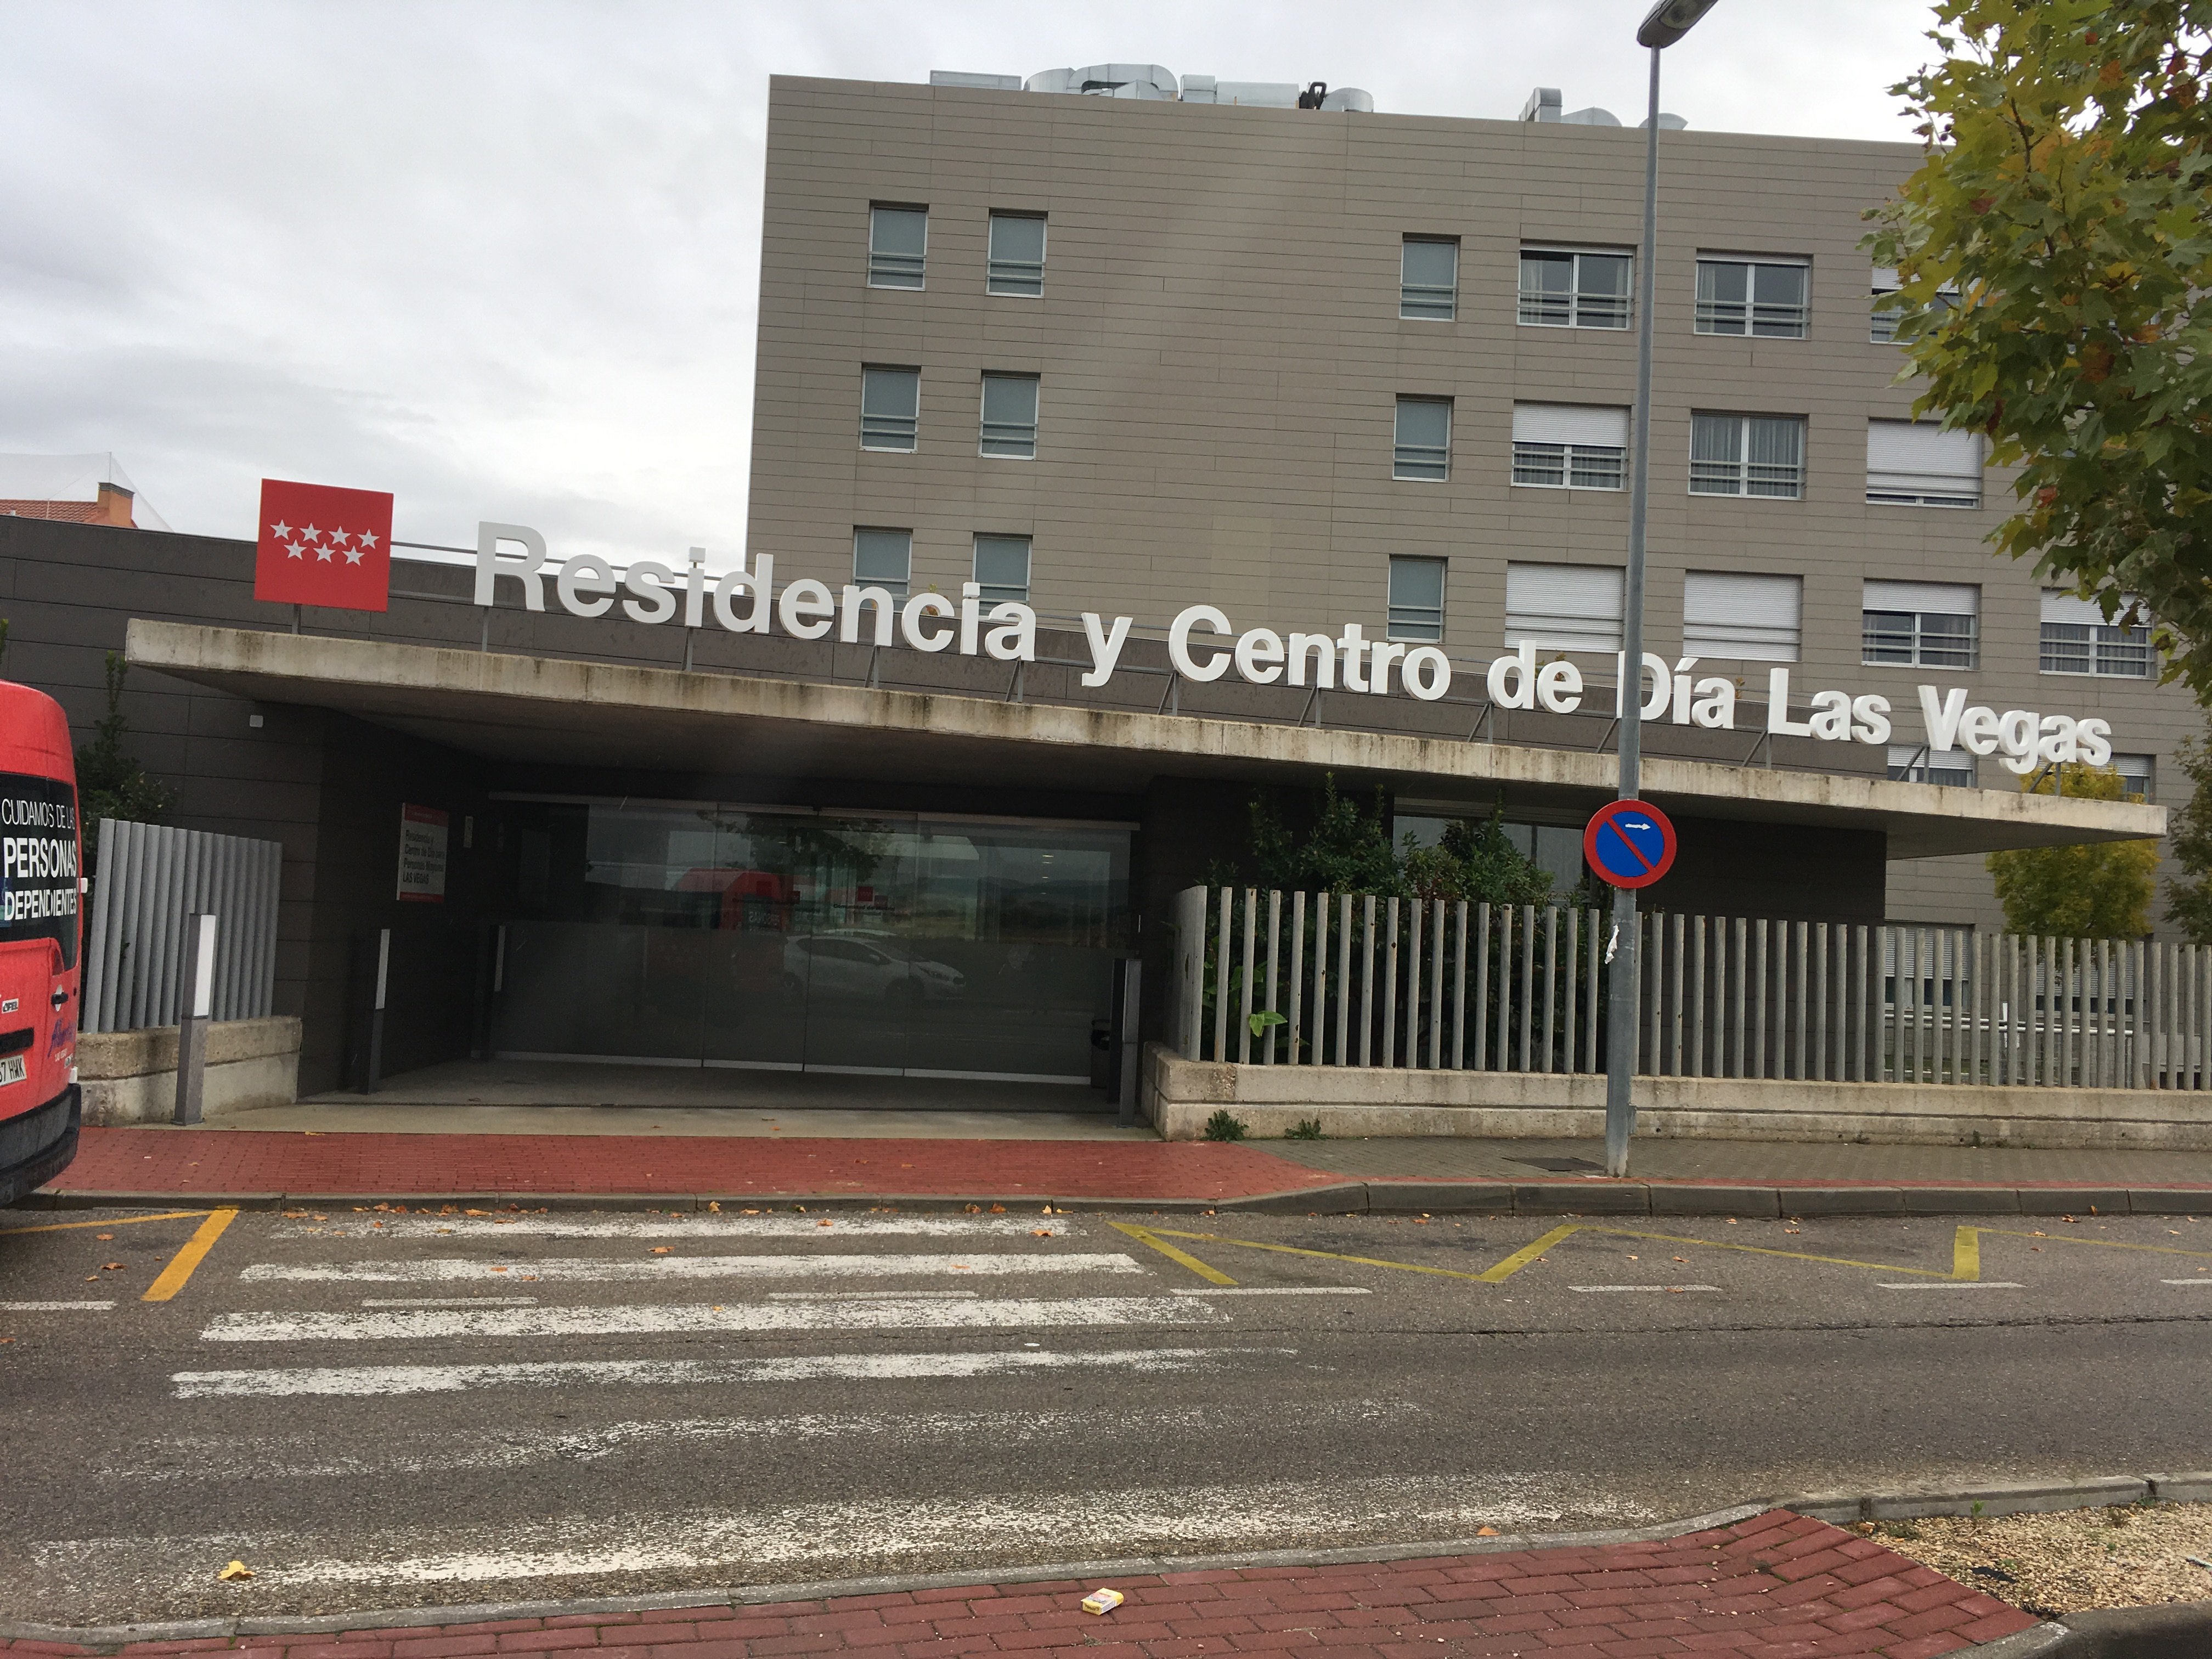 Arjo Iberia on Twitter: "La pasada semana llevamos a cabo una formación junto al personal de la Residencia y Centro de Día Las Vegas de de Madrid. 👨‍⚕️👩‍⚕️ En Arjo Iberia